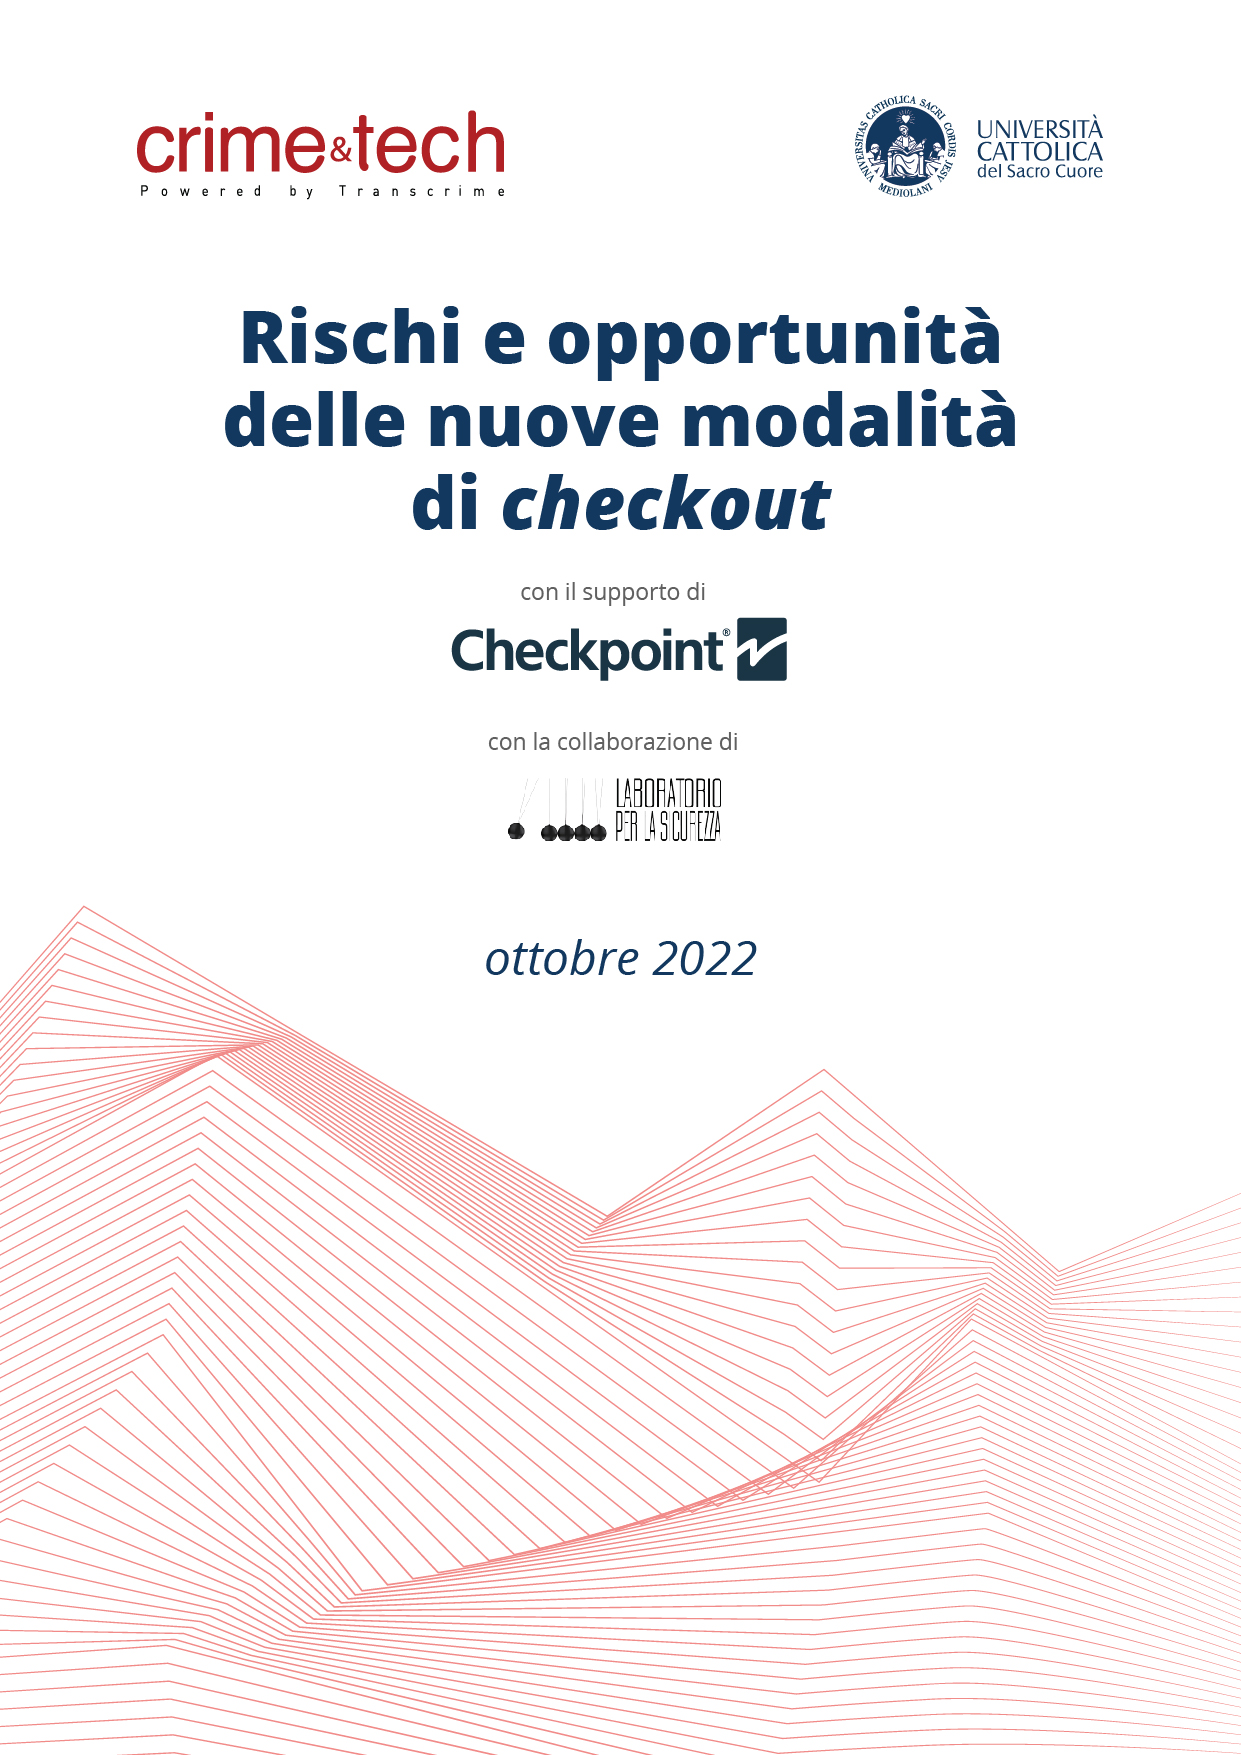 Ricerca Checkpoint: Rischi e opportunità delle nuove modalità di checkout